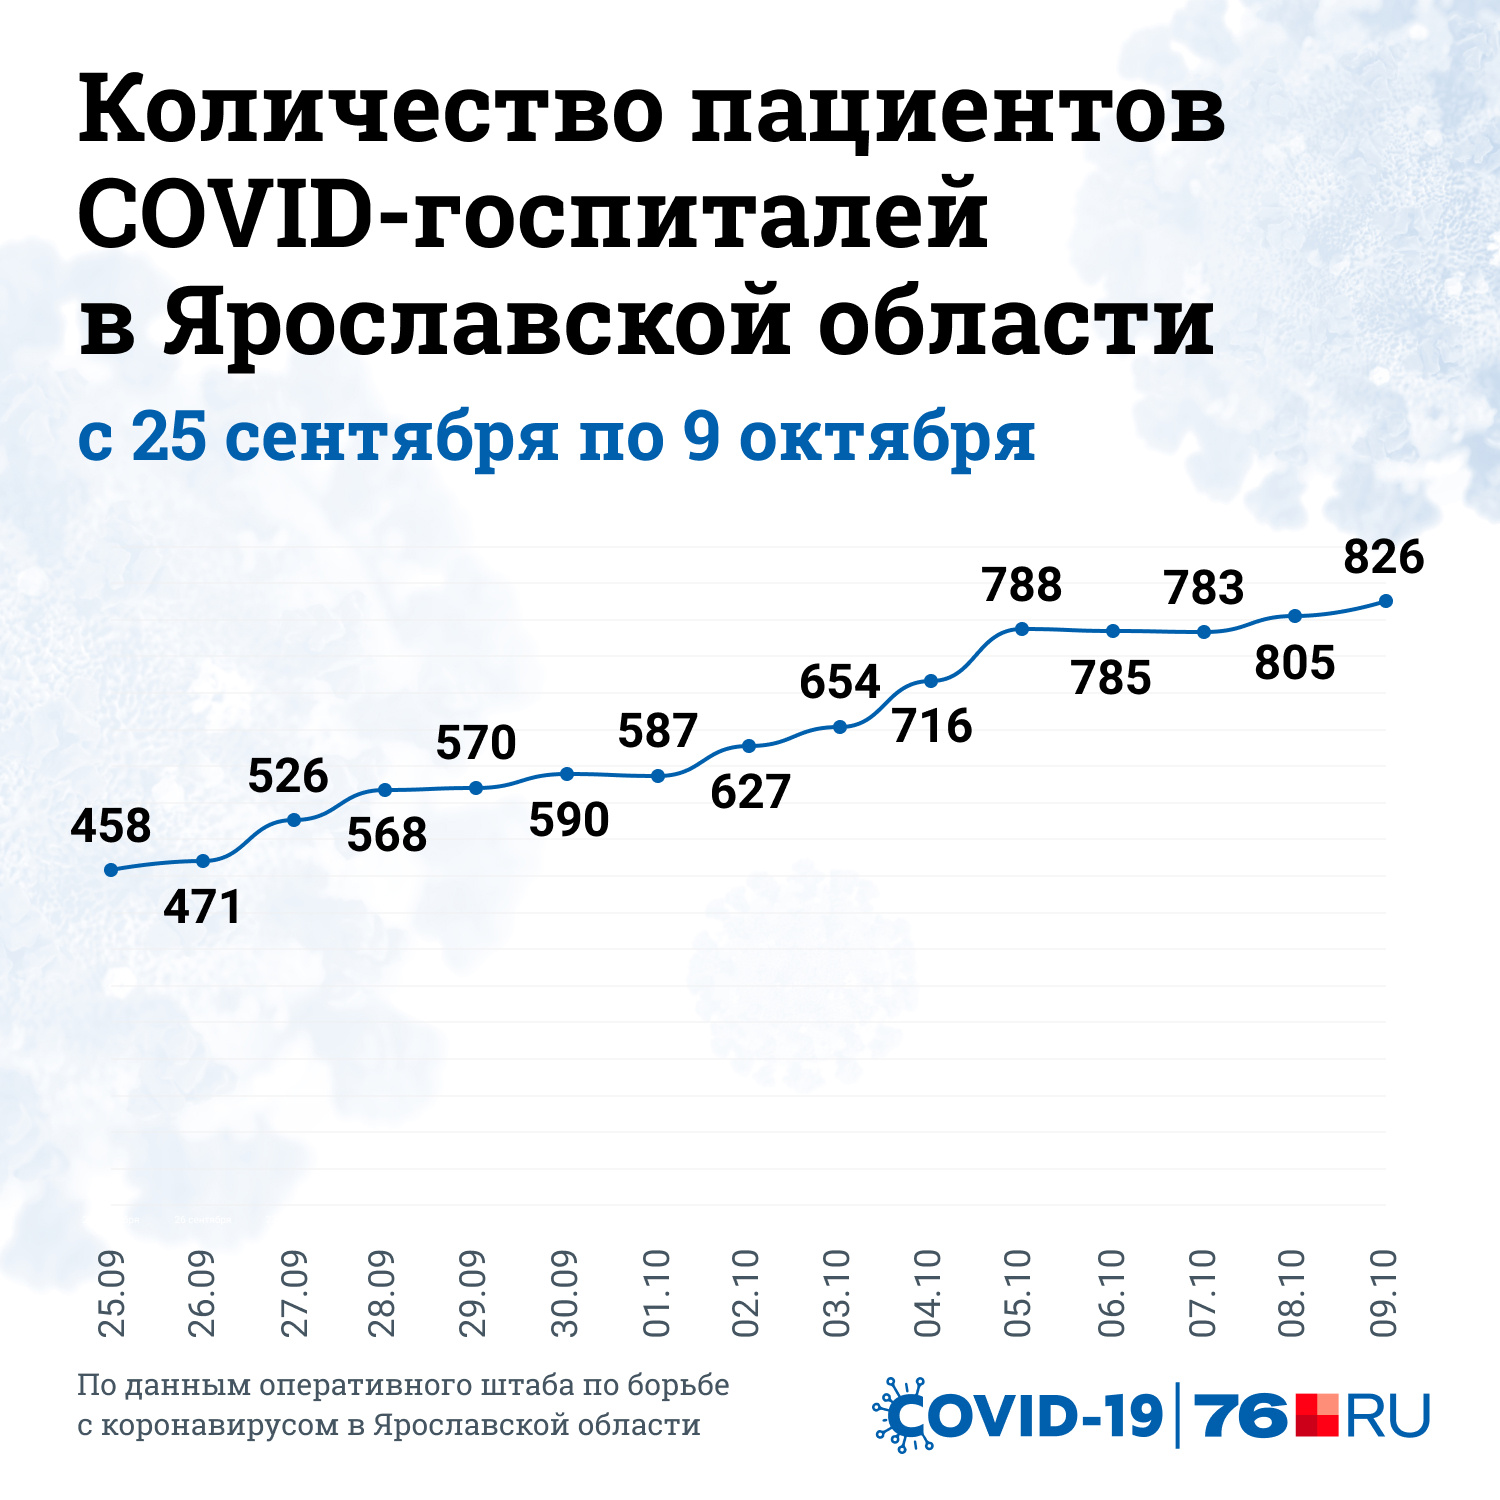 Резкий рост пациентов в COVID-госпиталях Ярославской области зафиксирован с конца сентября